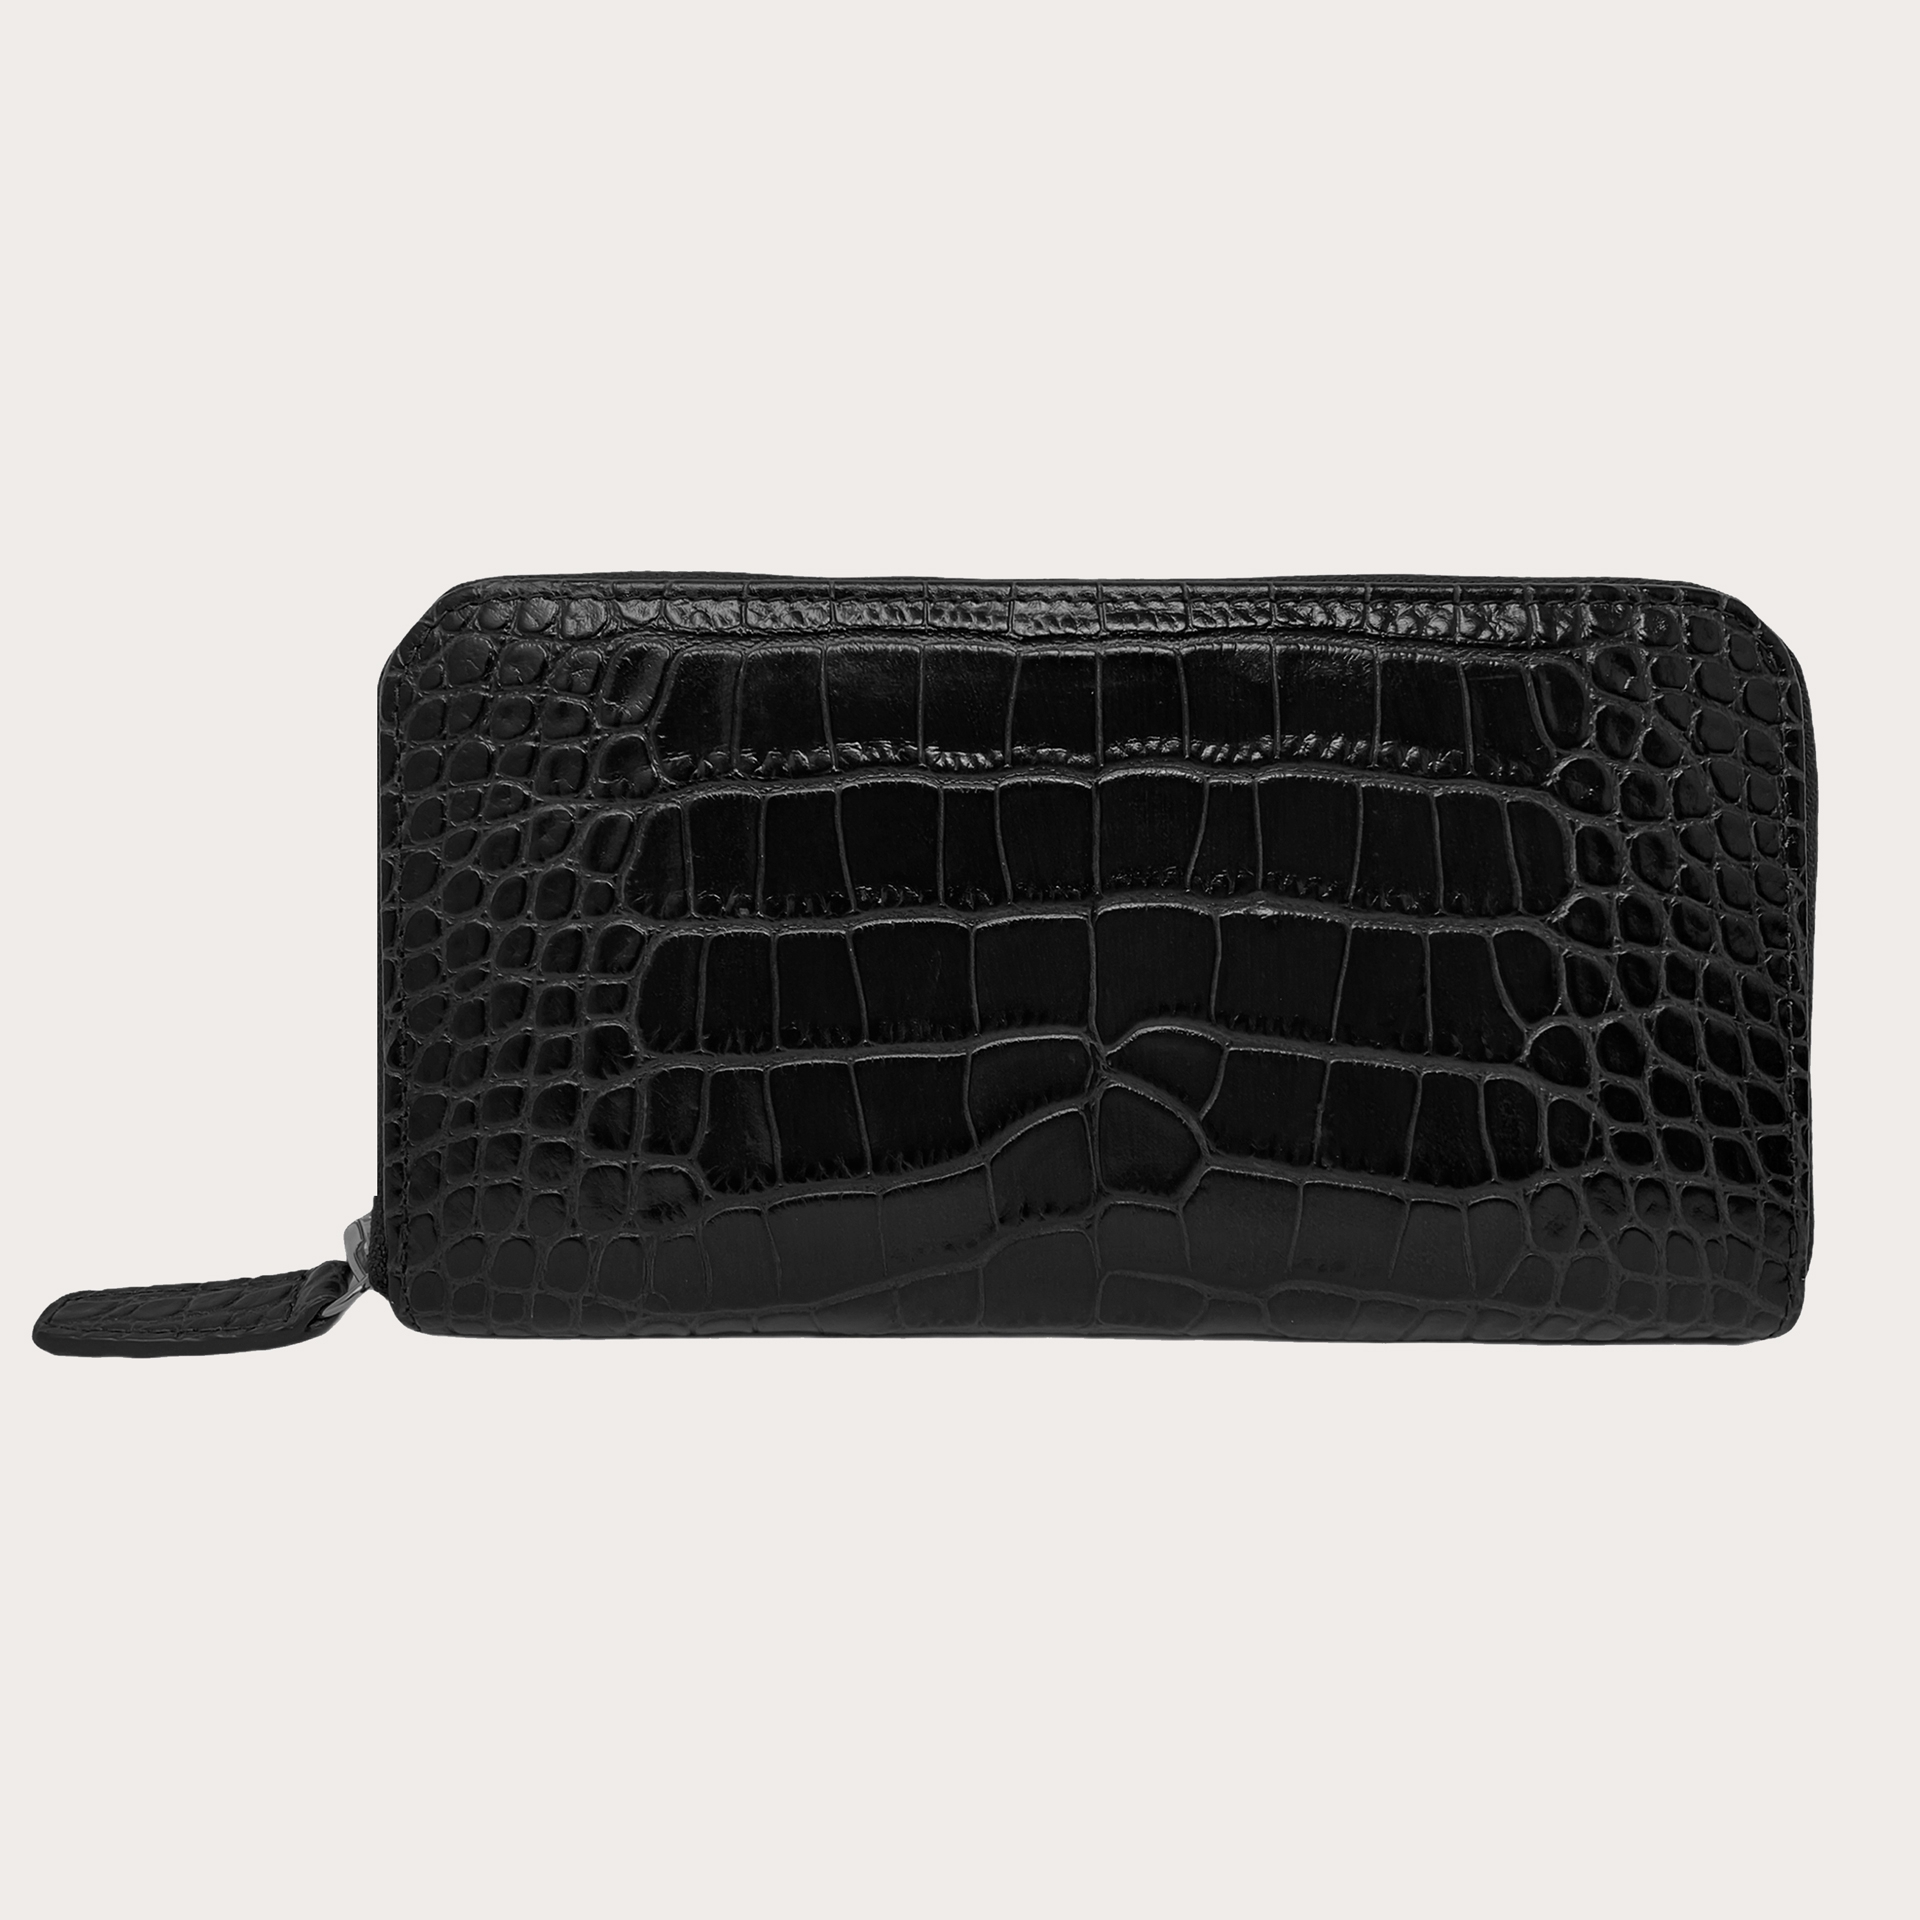 BRUCLE Portefeuille femme raffiné imprimé crocodile noir avec zip